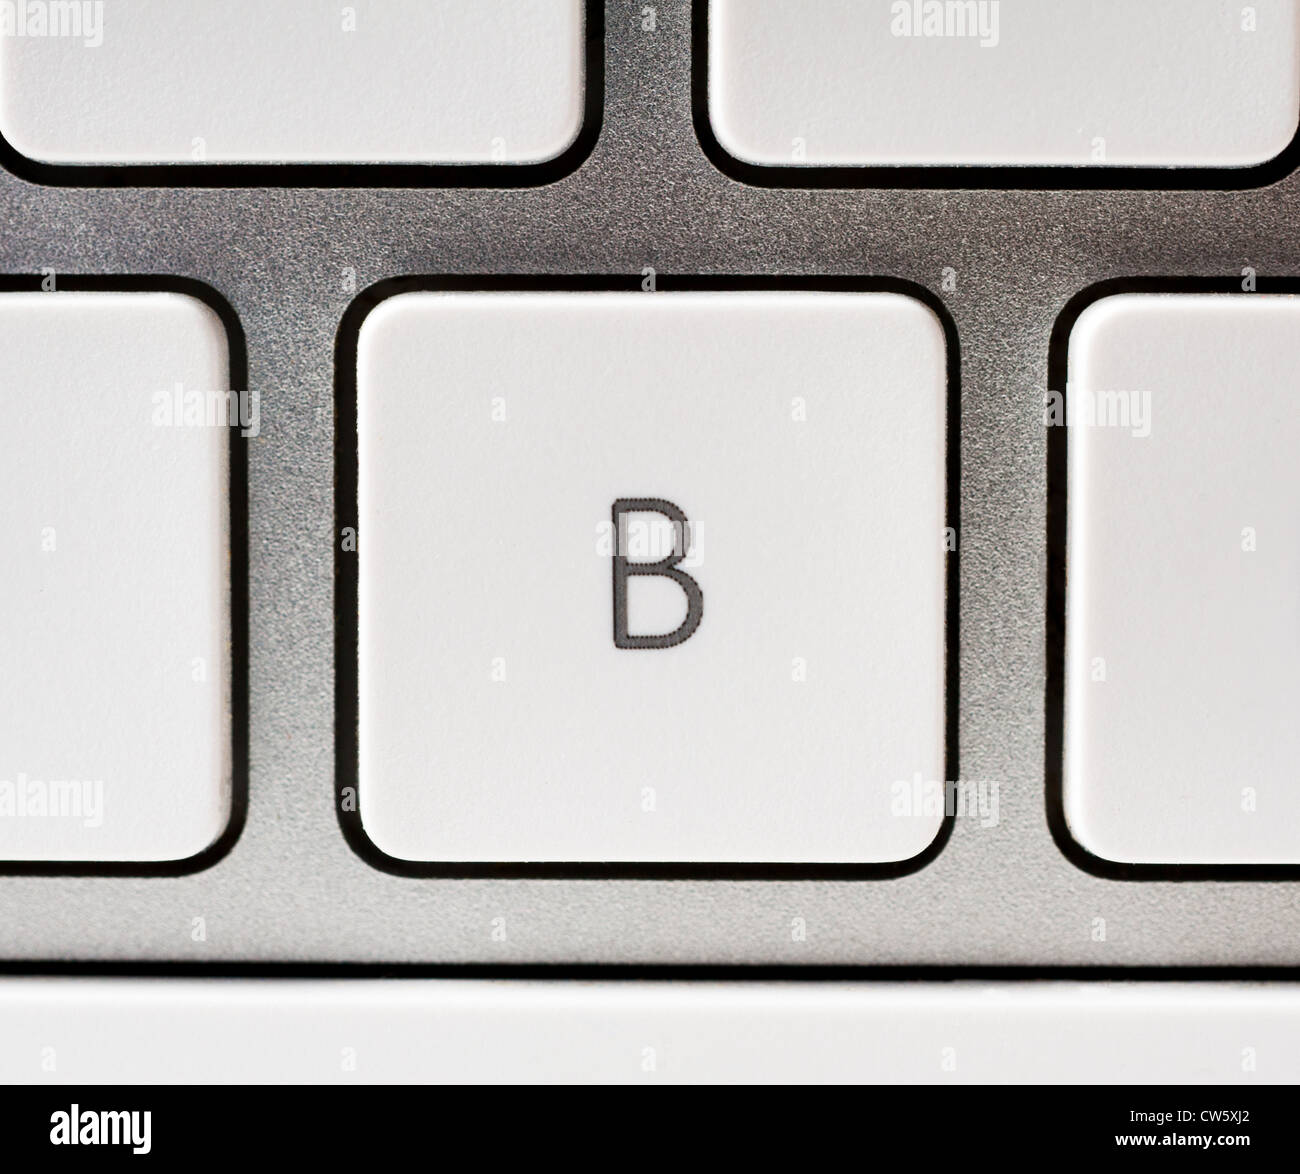 Lettre B sur un clavier Apple Photo Stock - Alamy